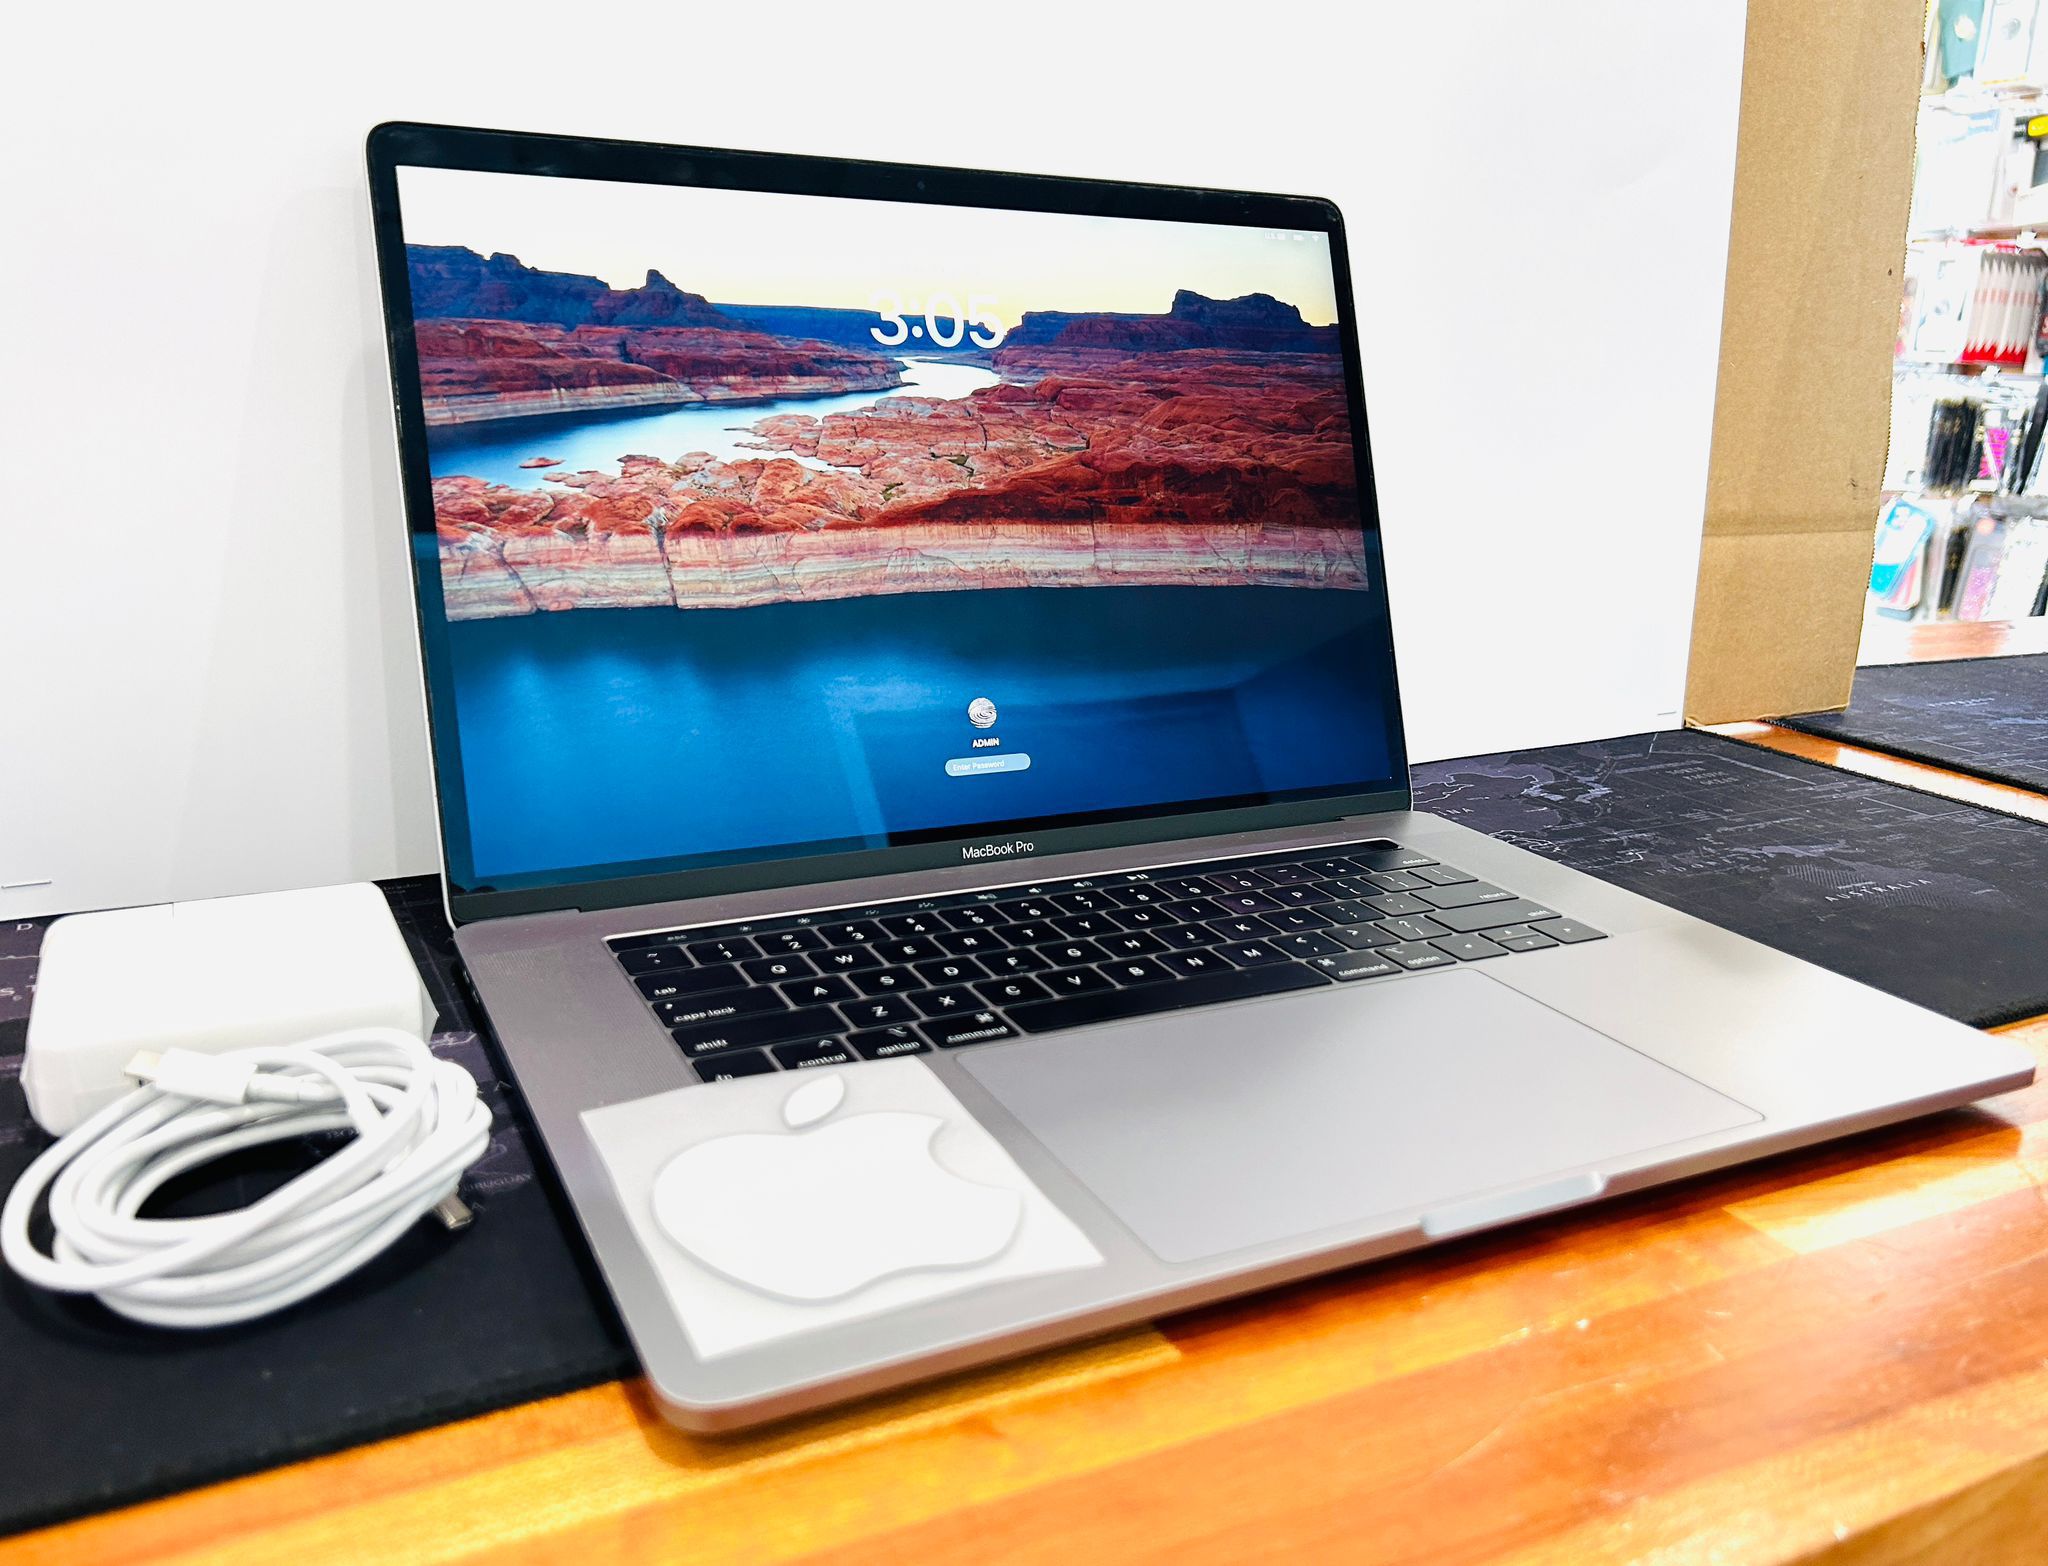 Apple MacBook Pro 2019 15-inch 6-CORE i7 16GB 256GB TouchBar Radeon PRO 555X 4GB V-RAM